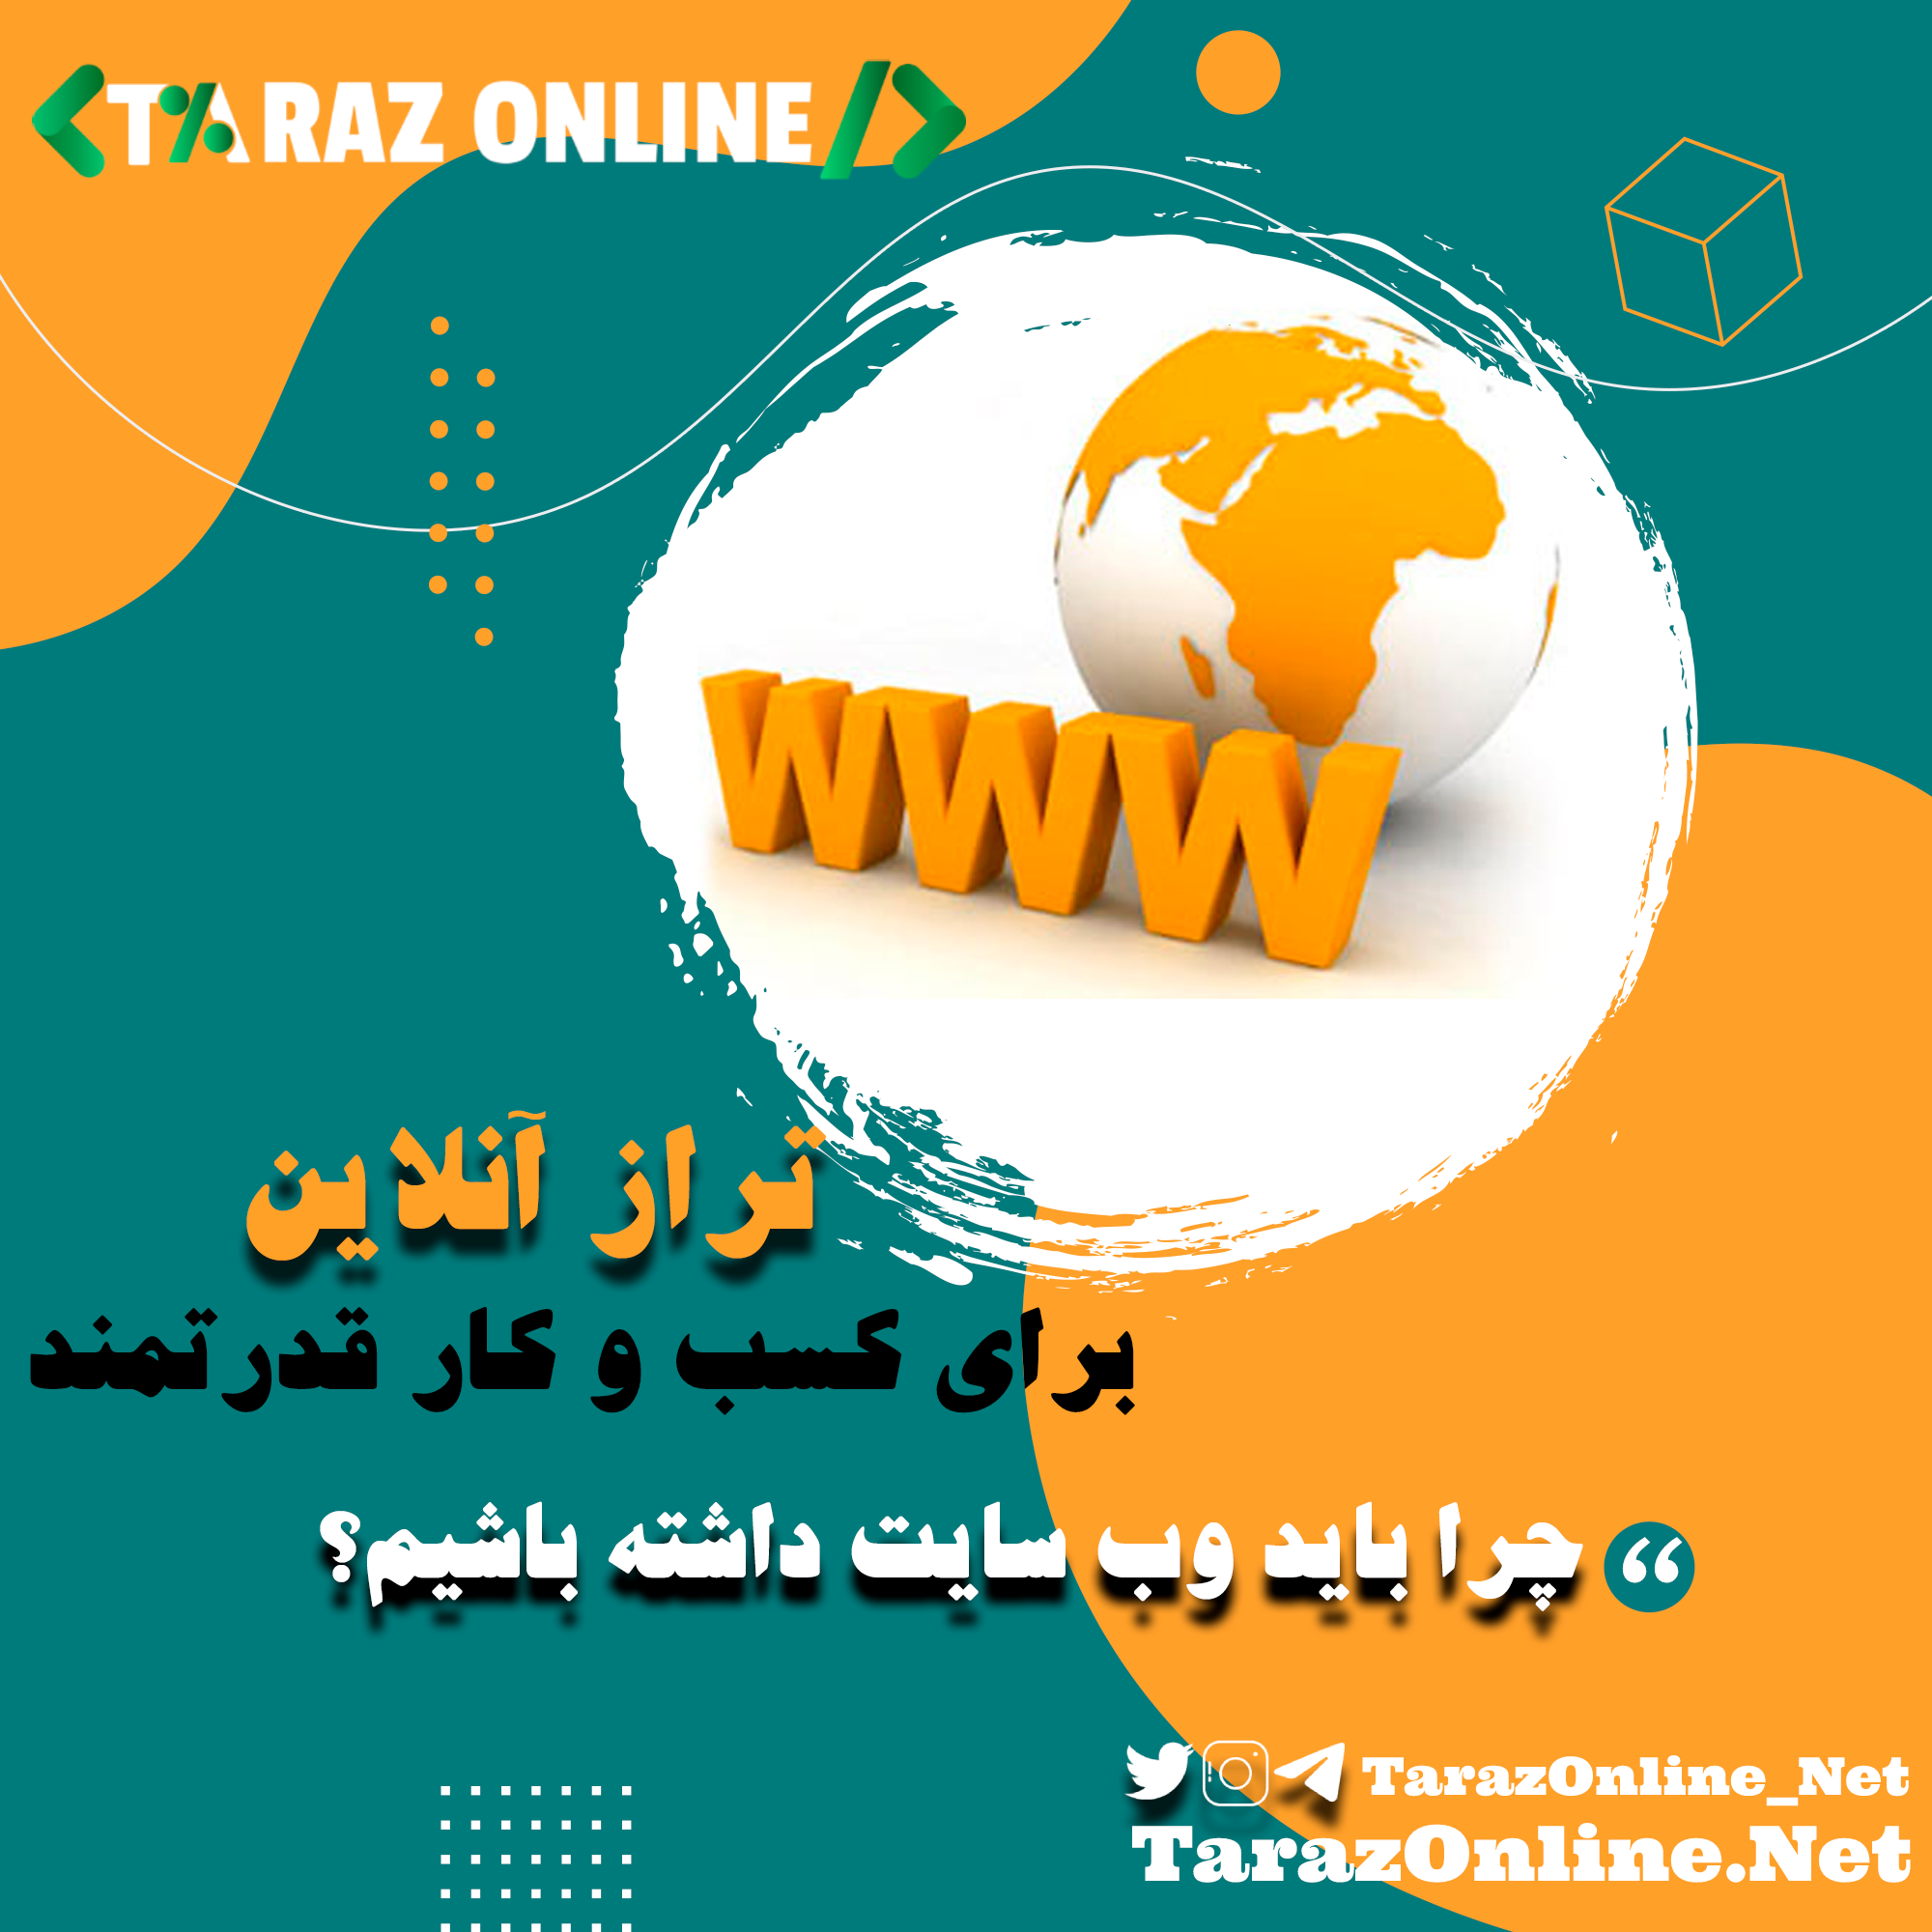  دفتر خدمات مالیاتی و طراحی وب سایت در استان گلستان راه اندازی شد!